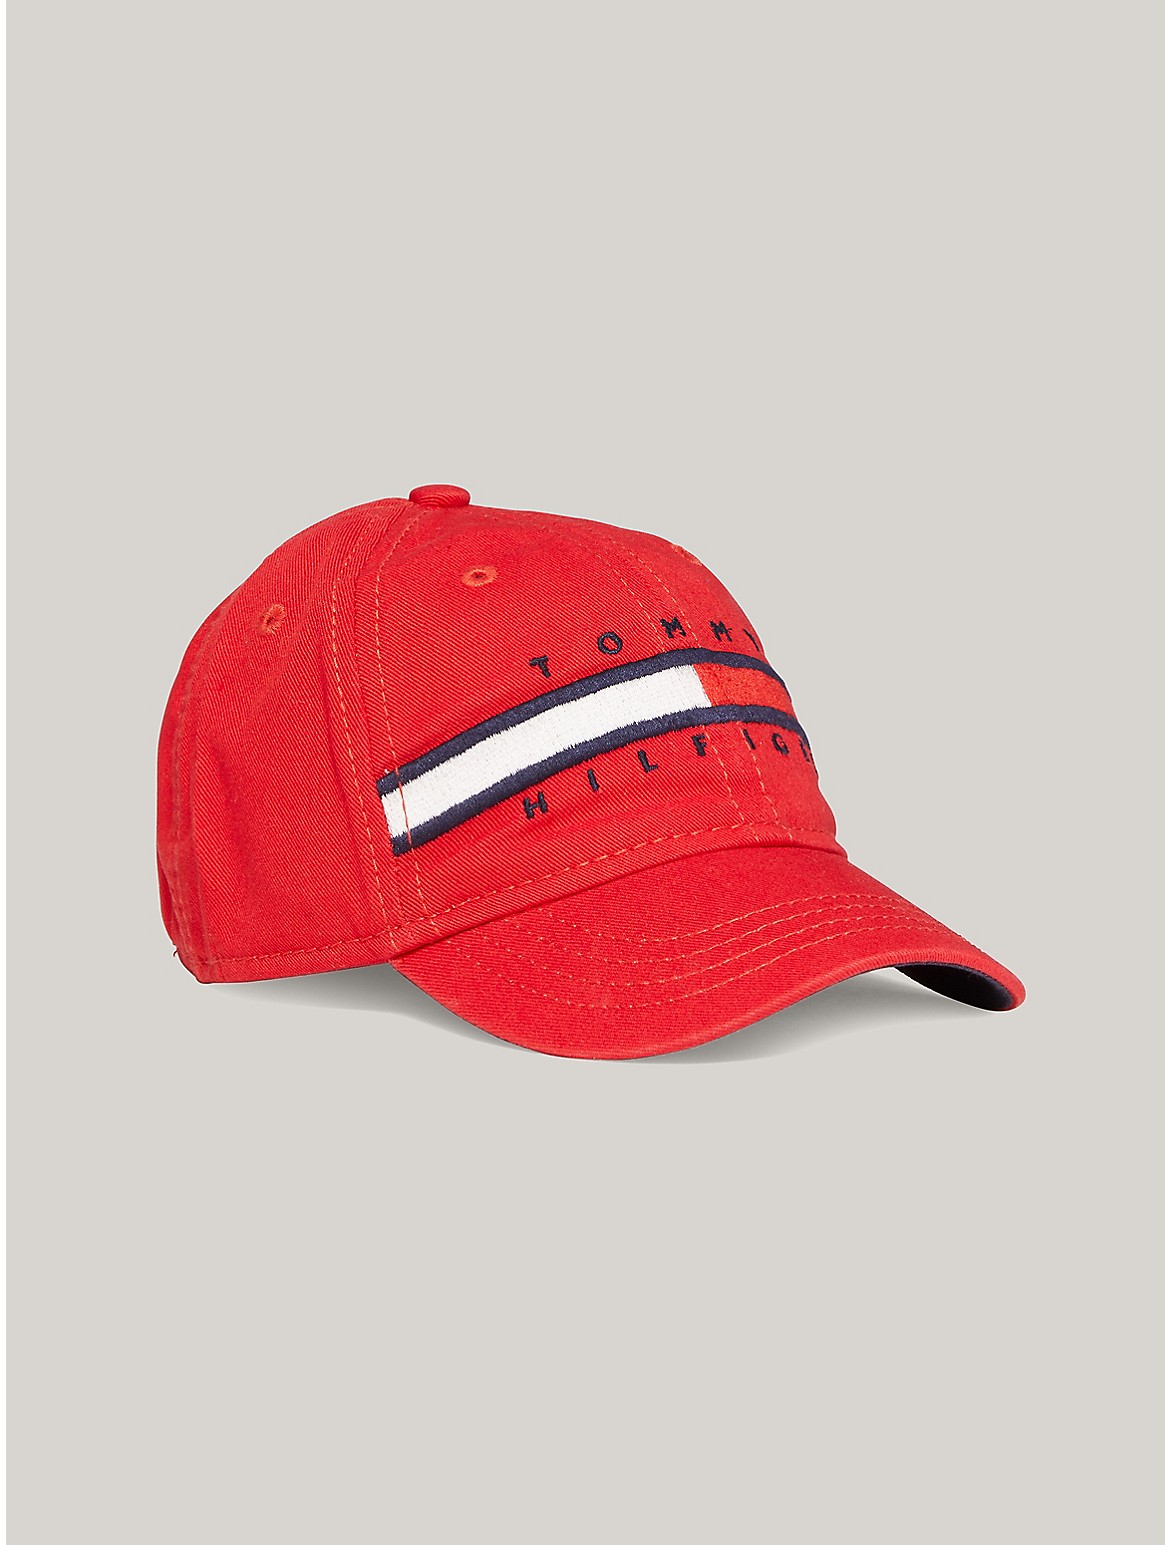 Tommy Hilfiger Kids' Flag Stripe Logo Baseball Cap - Red - S